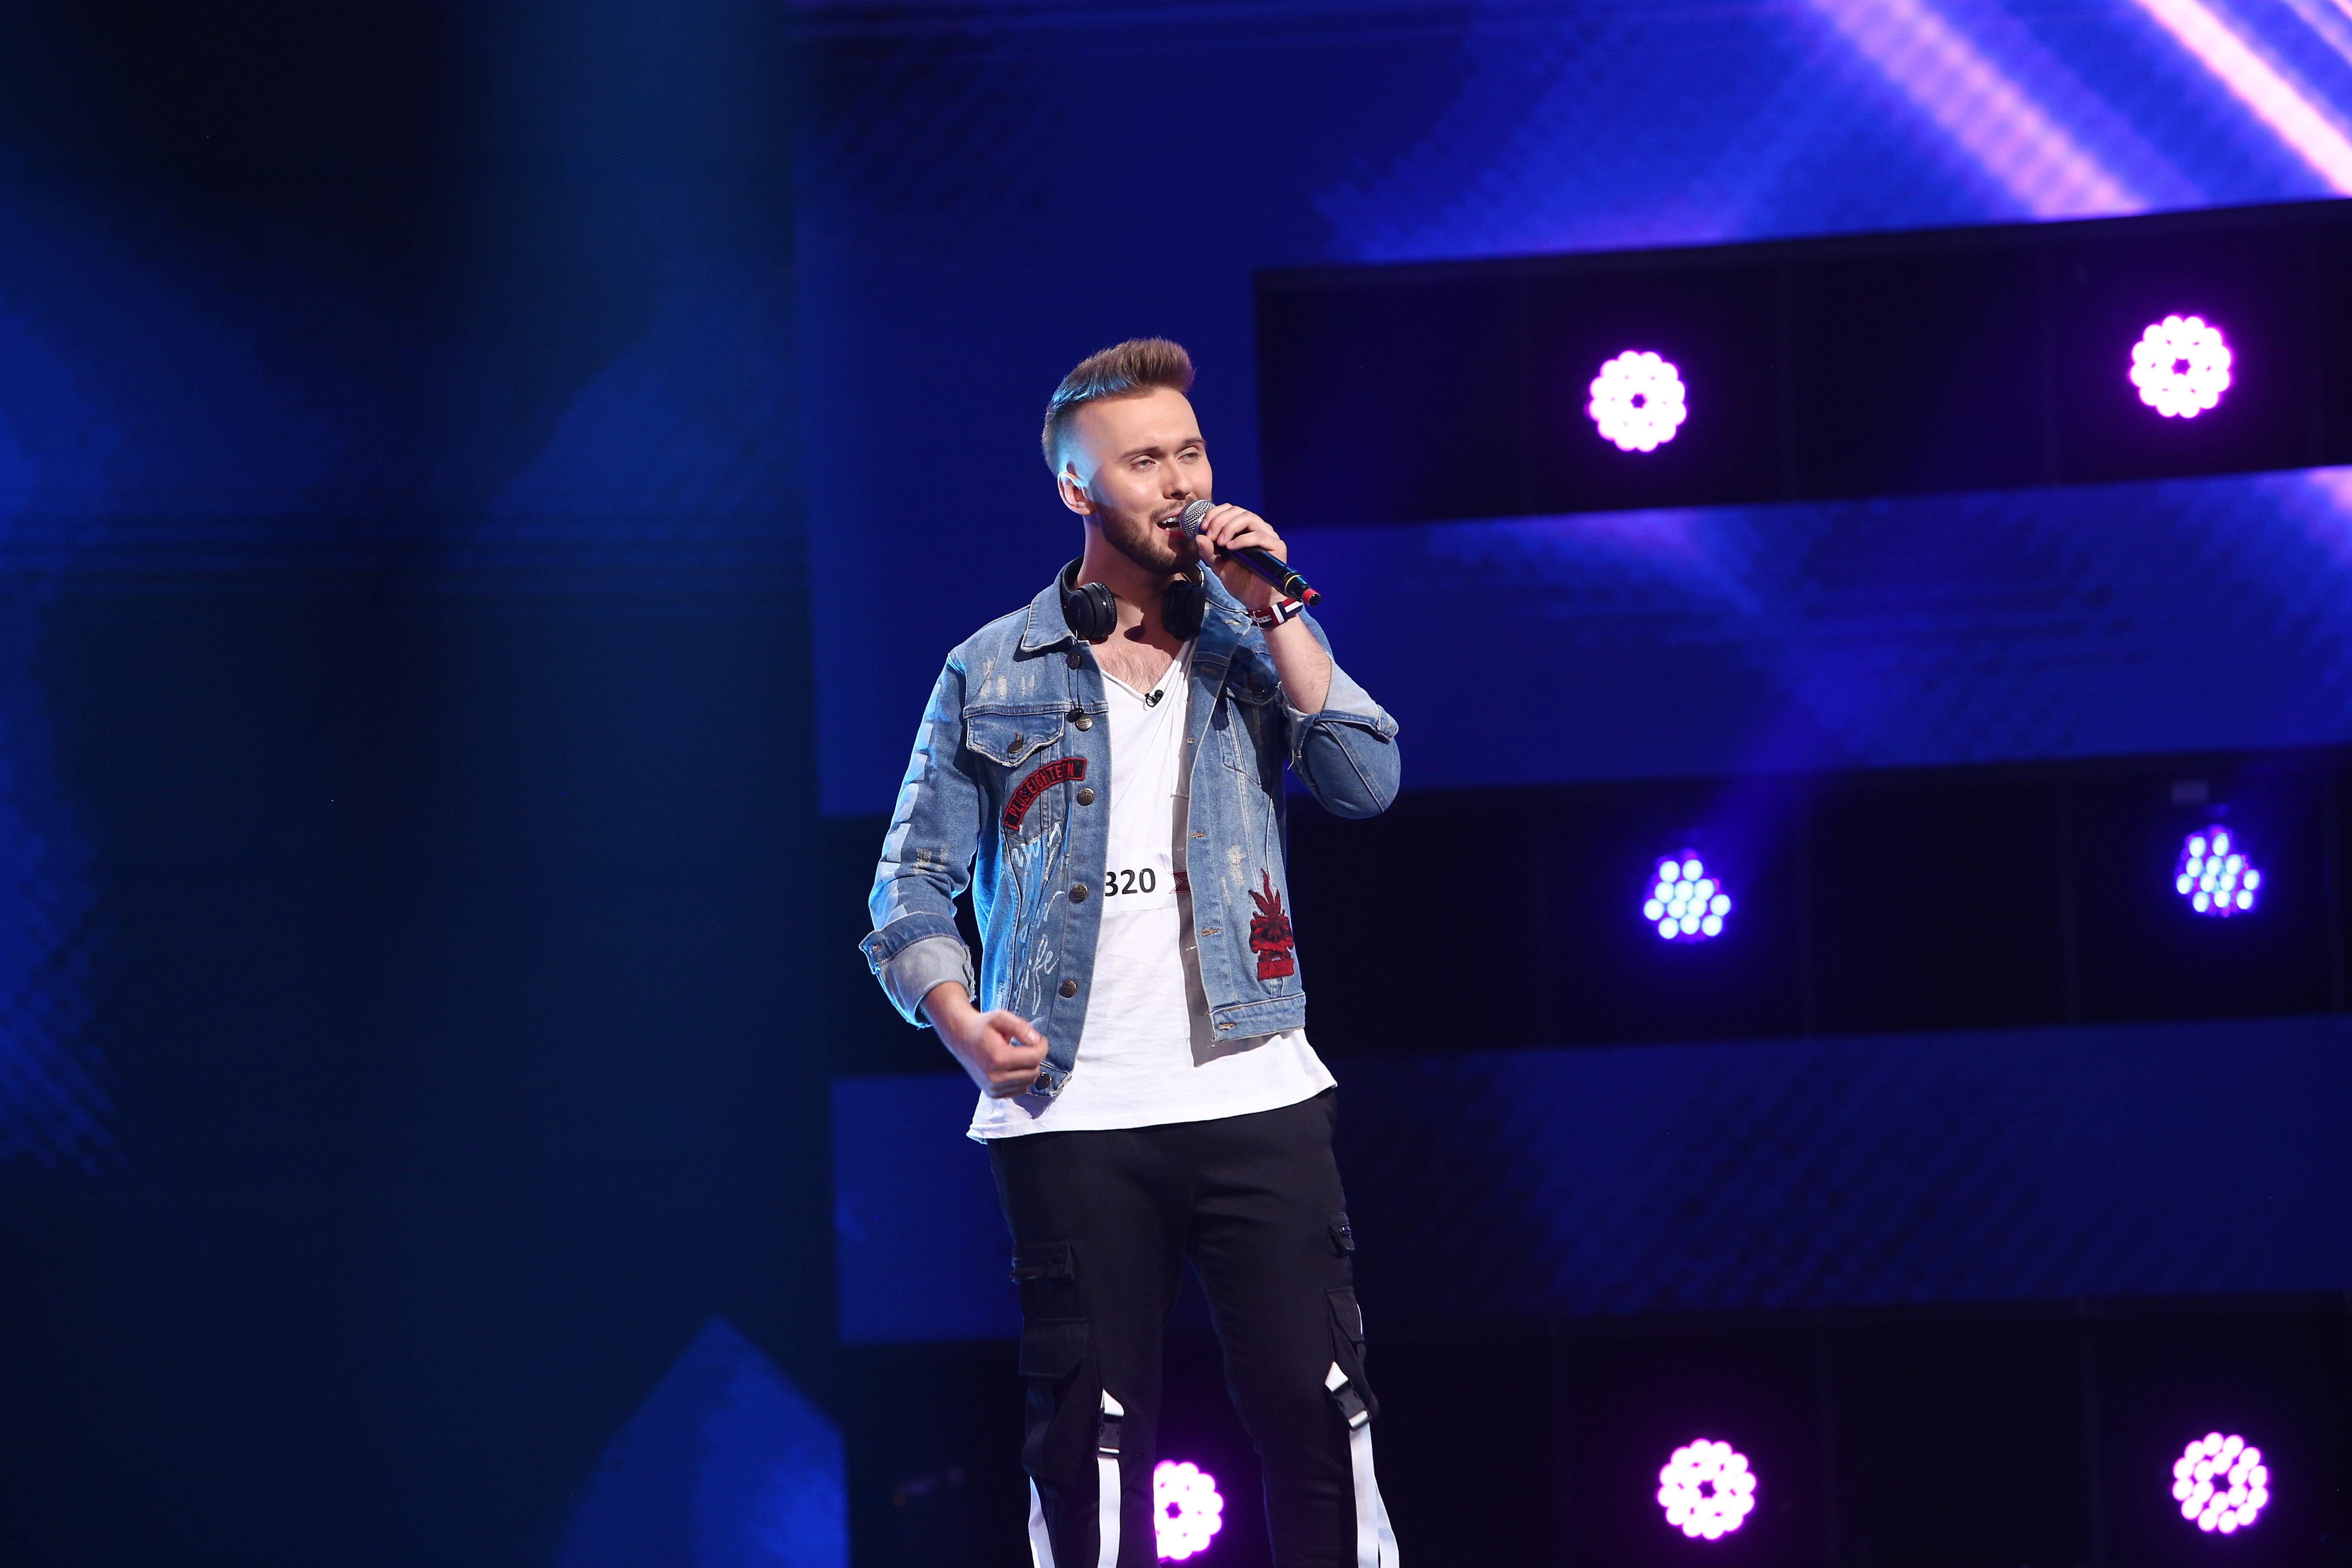 Szymon Grzybacz, la X Factor, sezonul 10, ediția 5, pe scenă